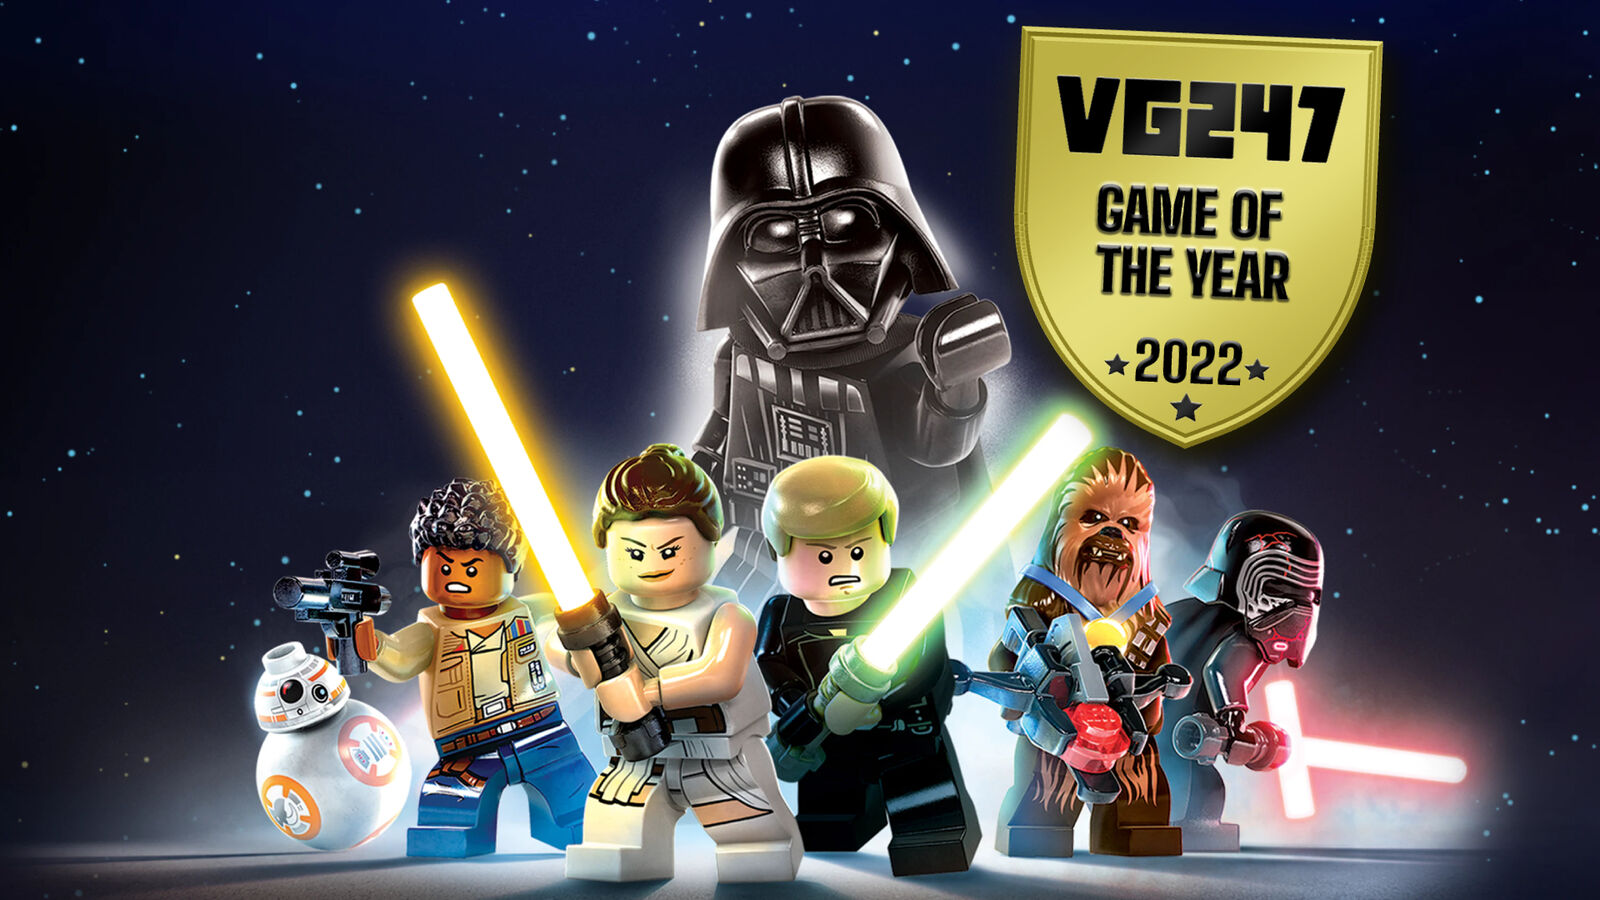 Lo mejor de 2022: Lego Star Wars - La saga Skywalker y la otra elección GOTY de Steph